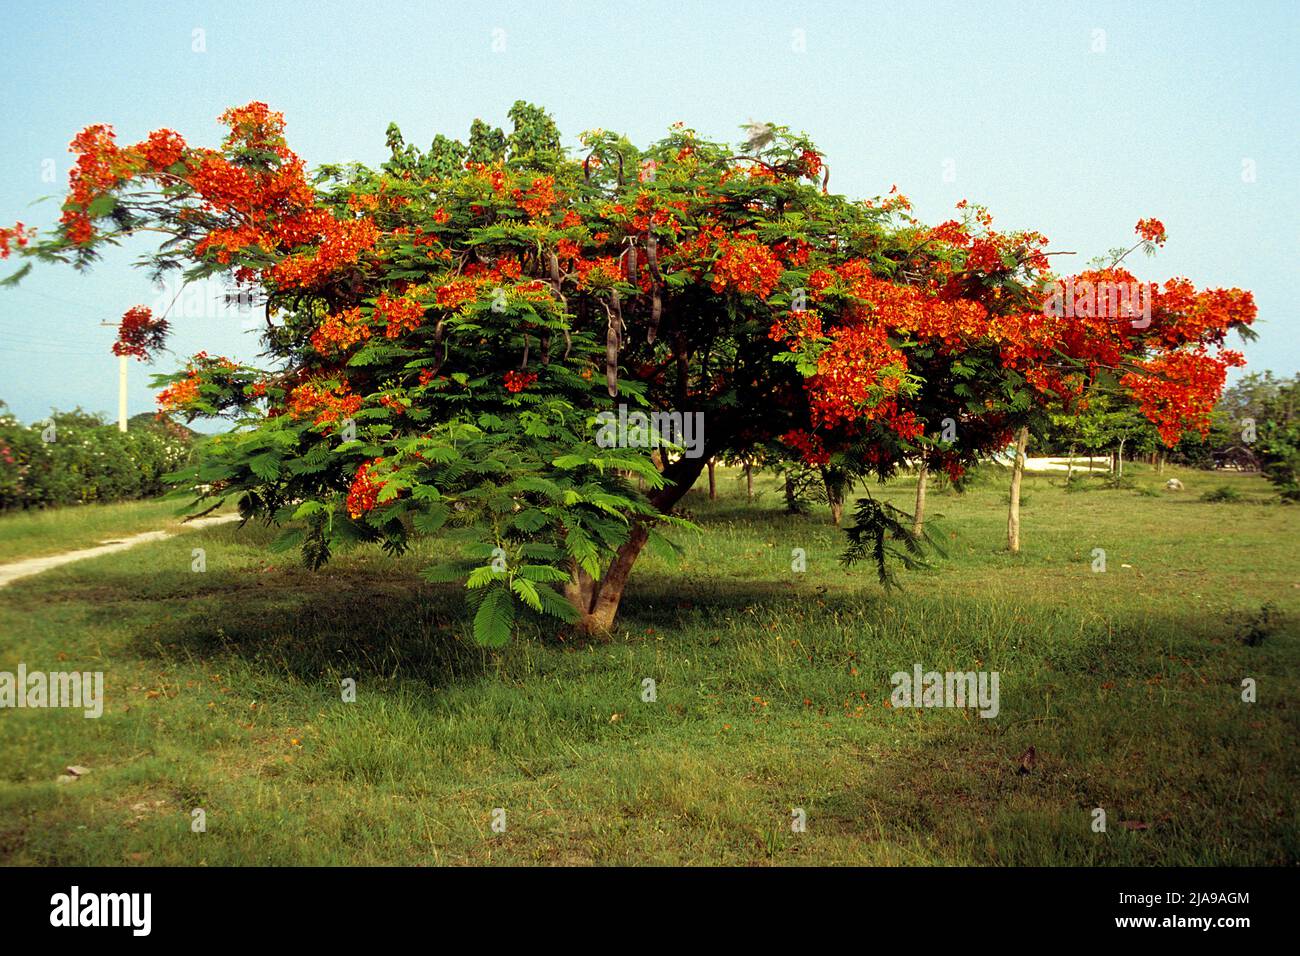 Flame tree (Delonix regia) at Pinar del Rio, Cuba, Caribbean Stock Photo